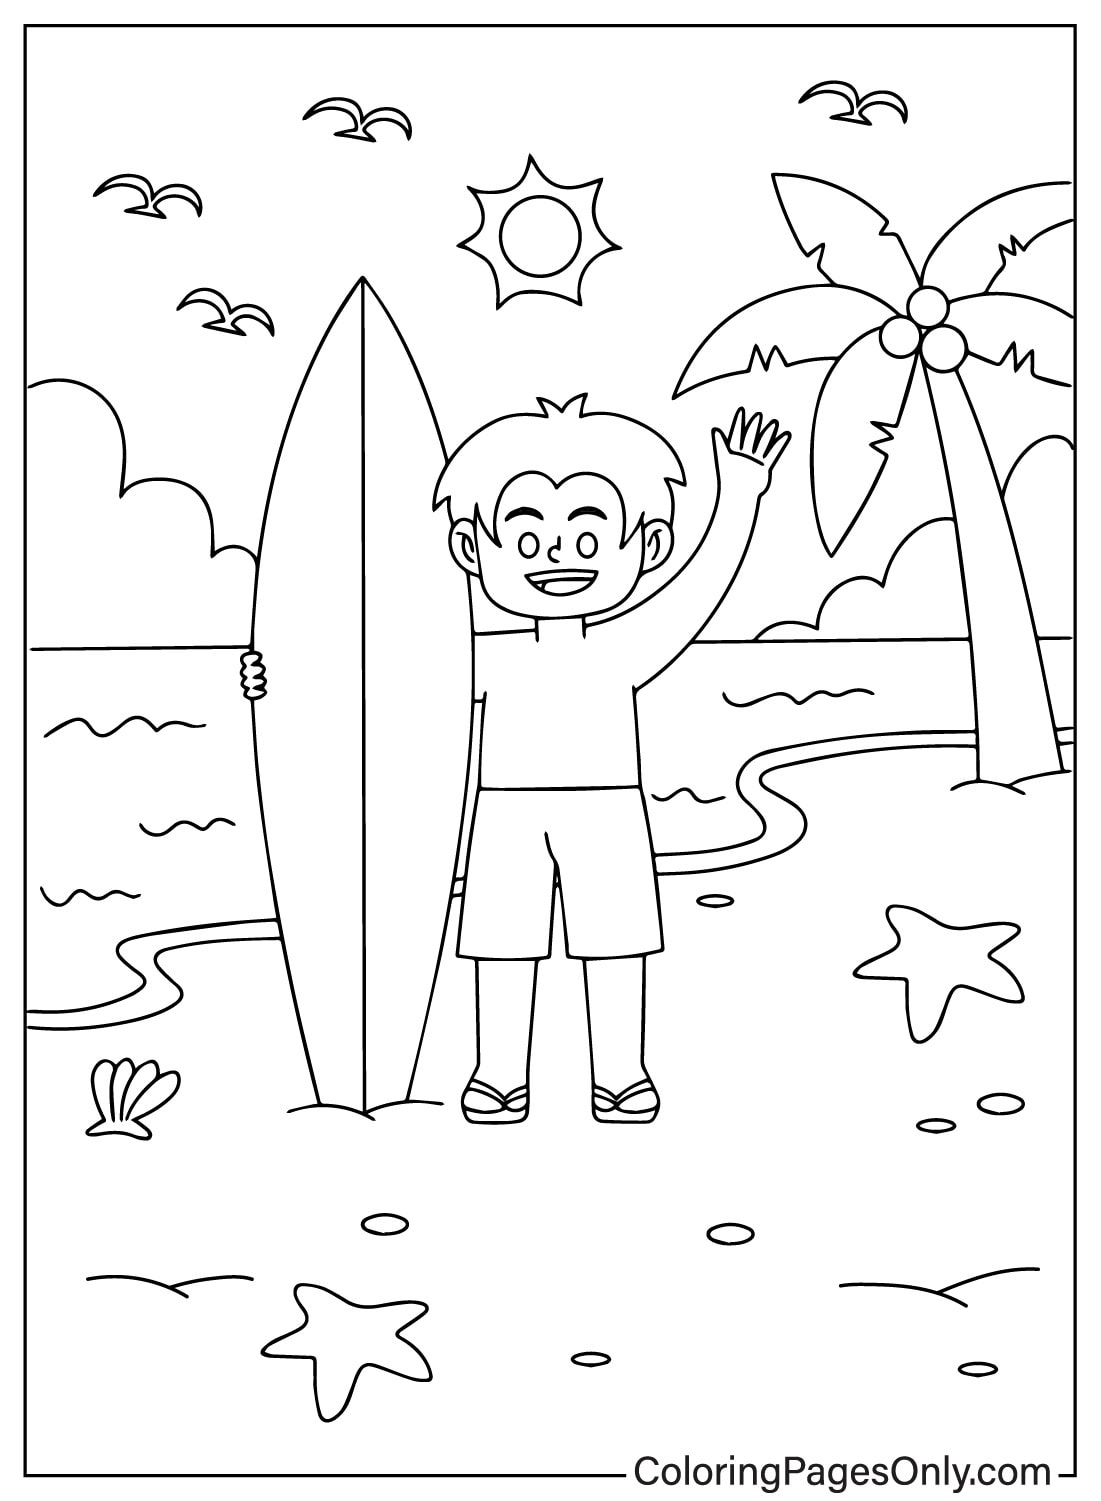 Маленький мальчик держит доску для серфинга